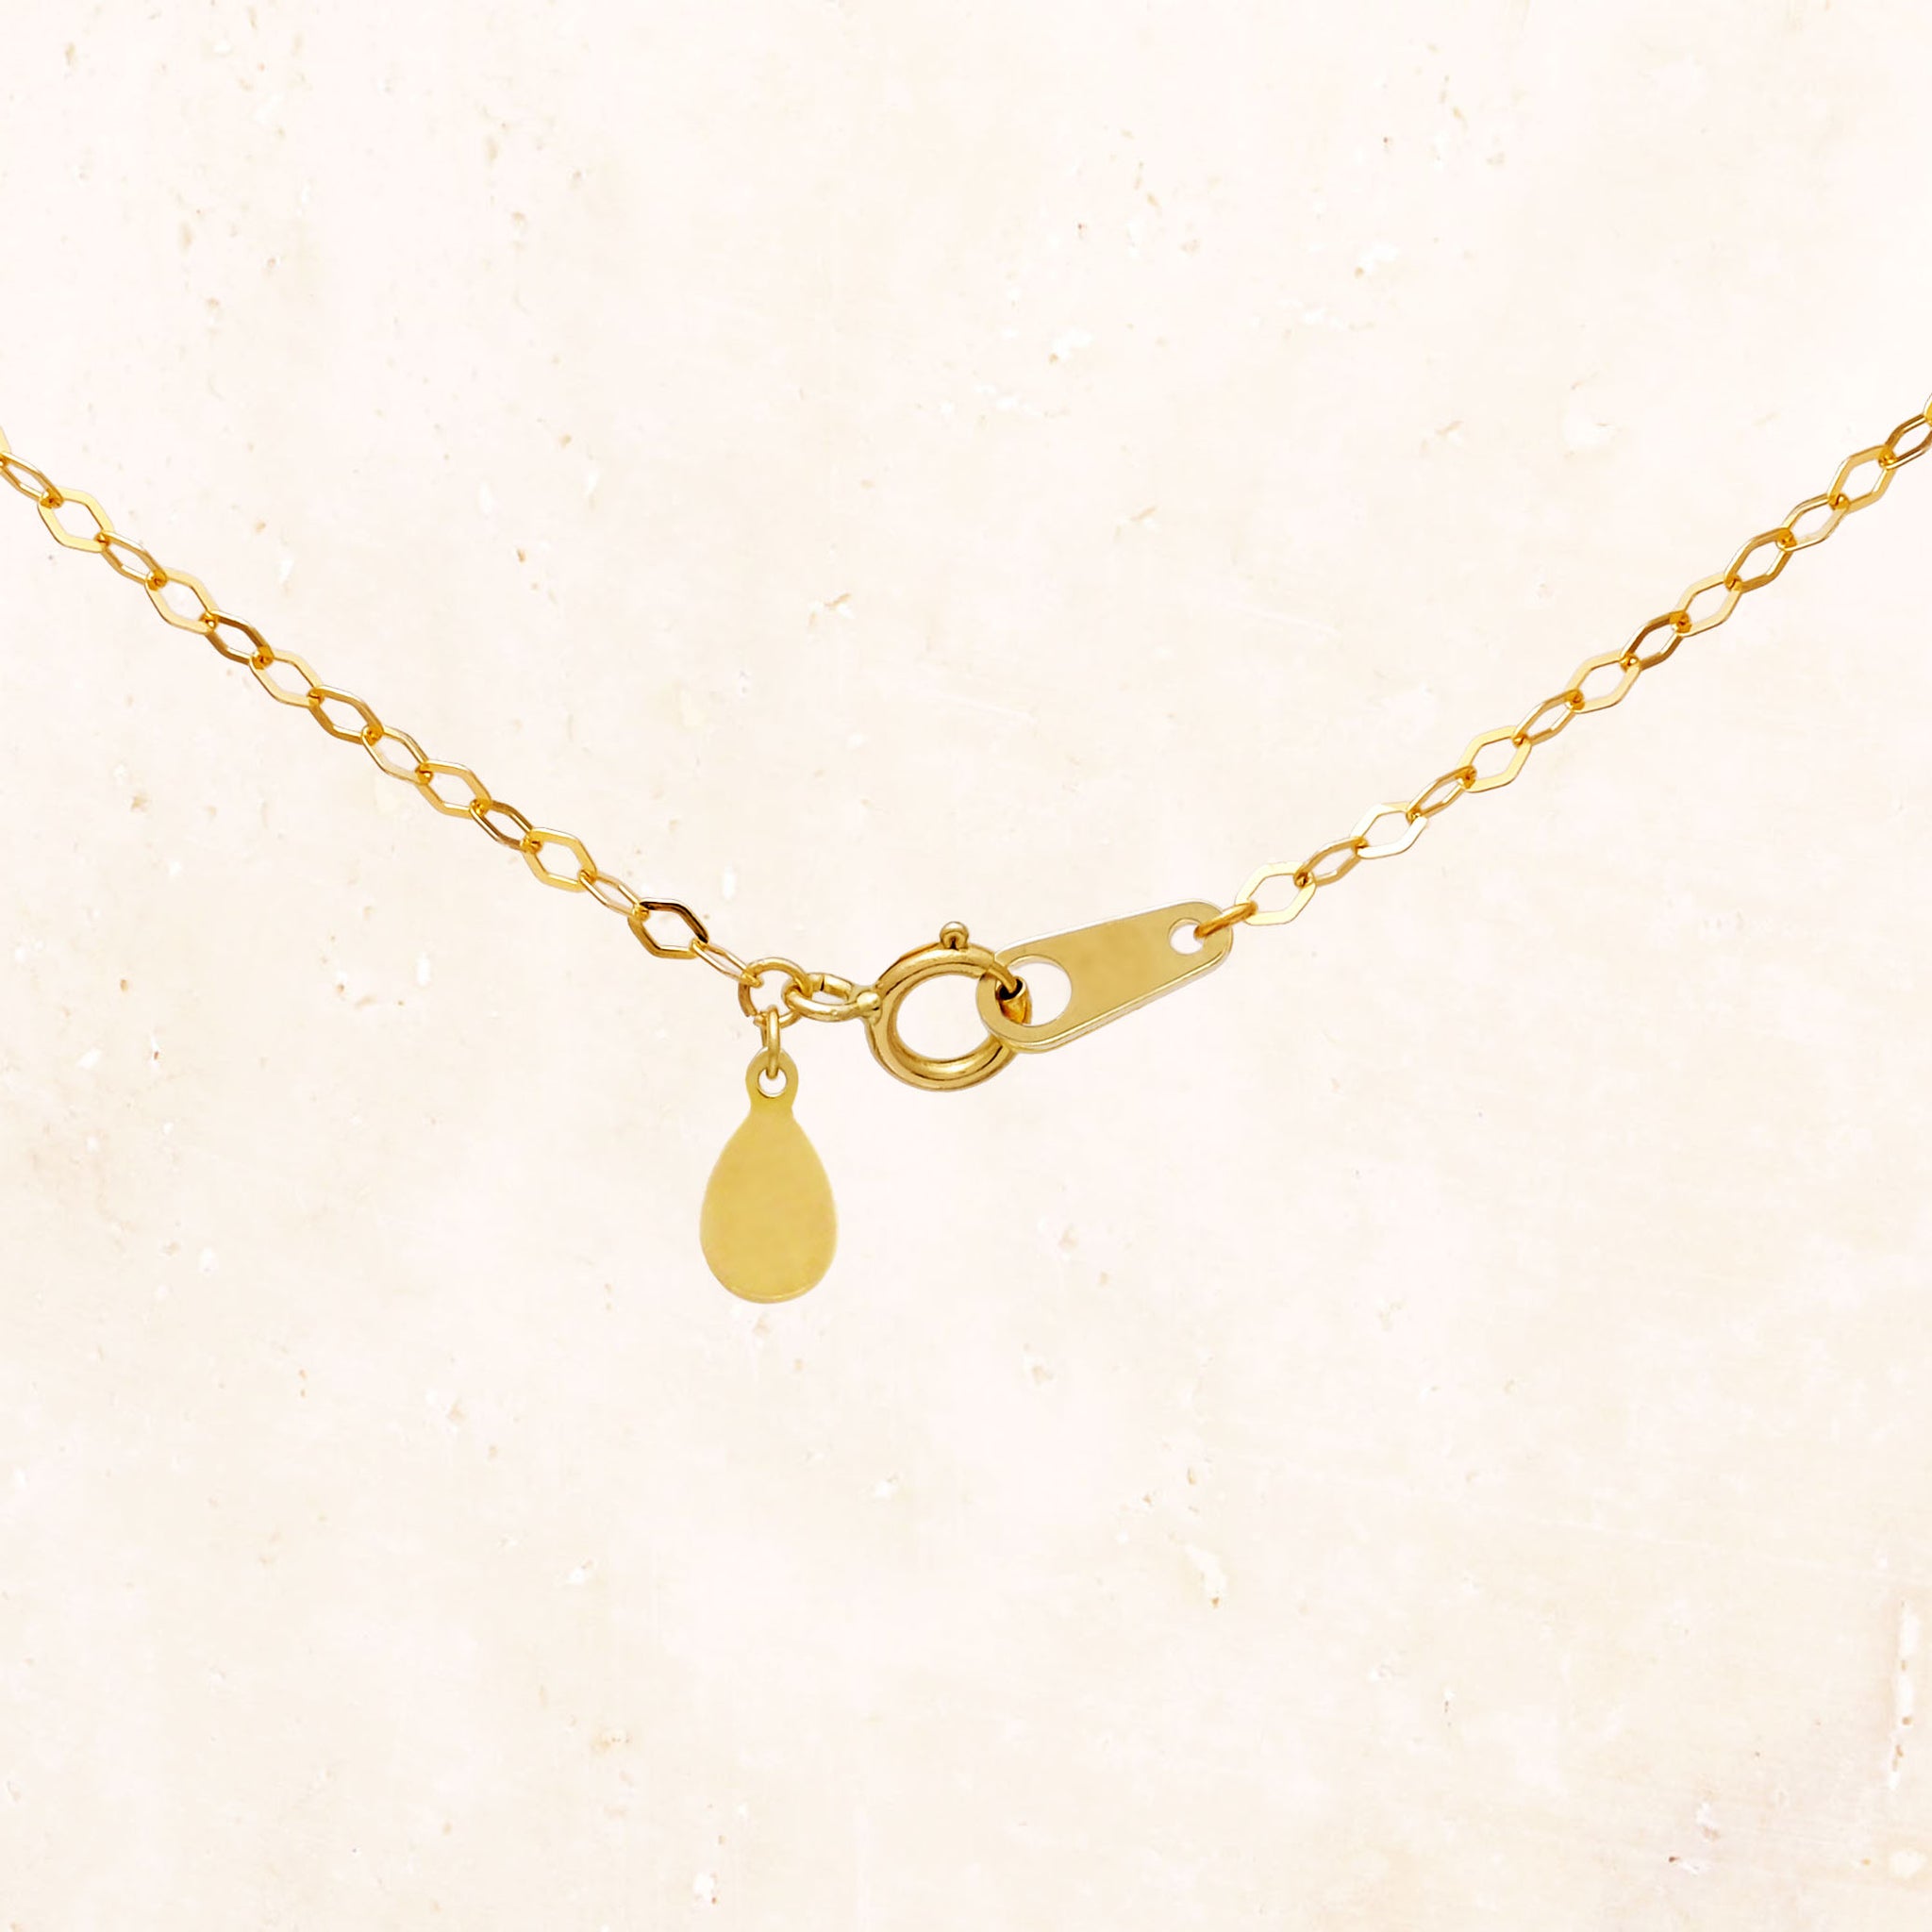 10K Gold Diamond Cut Chain Necklace 45cm